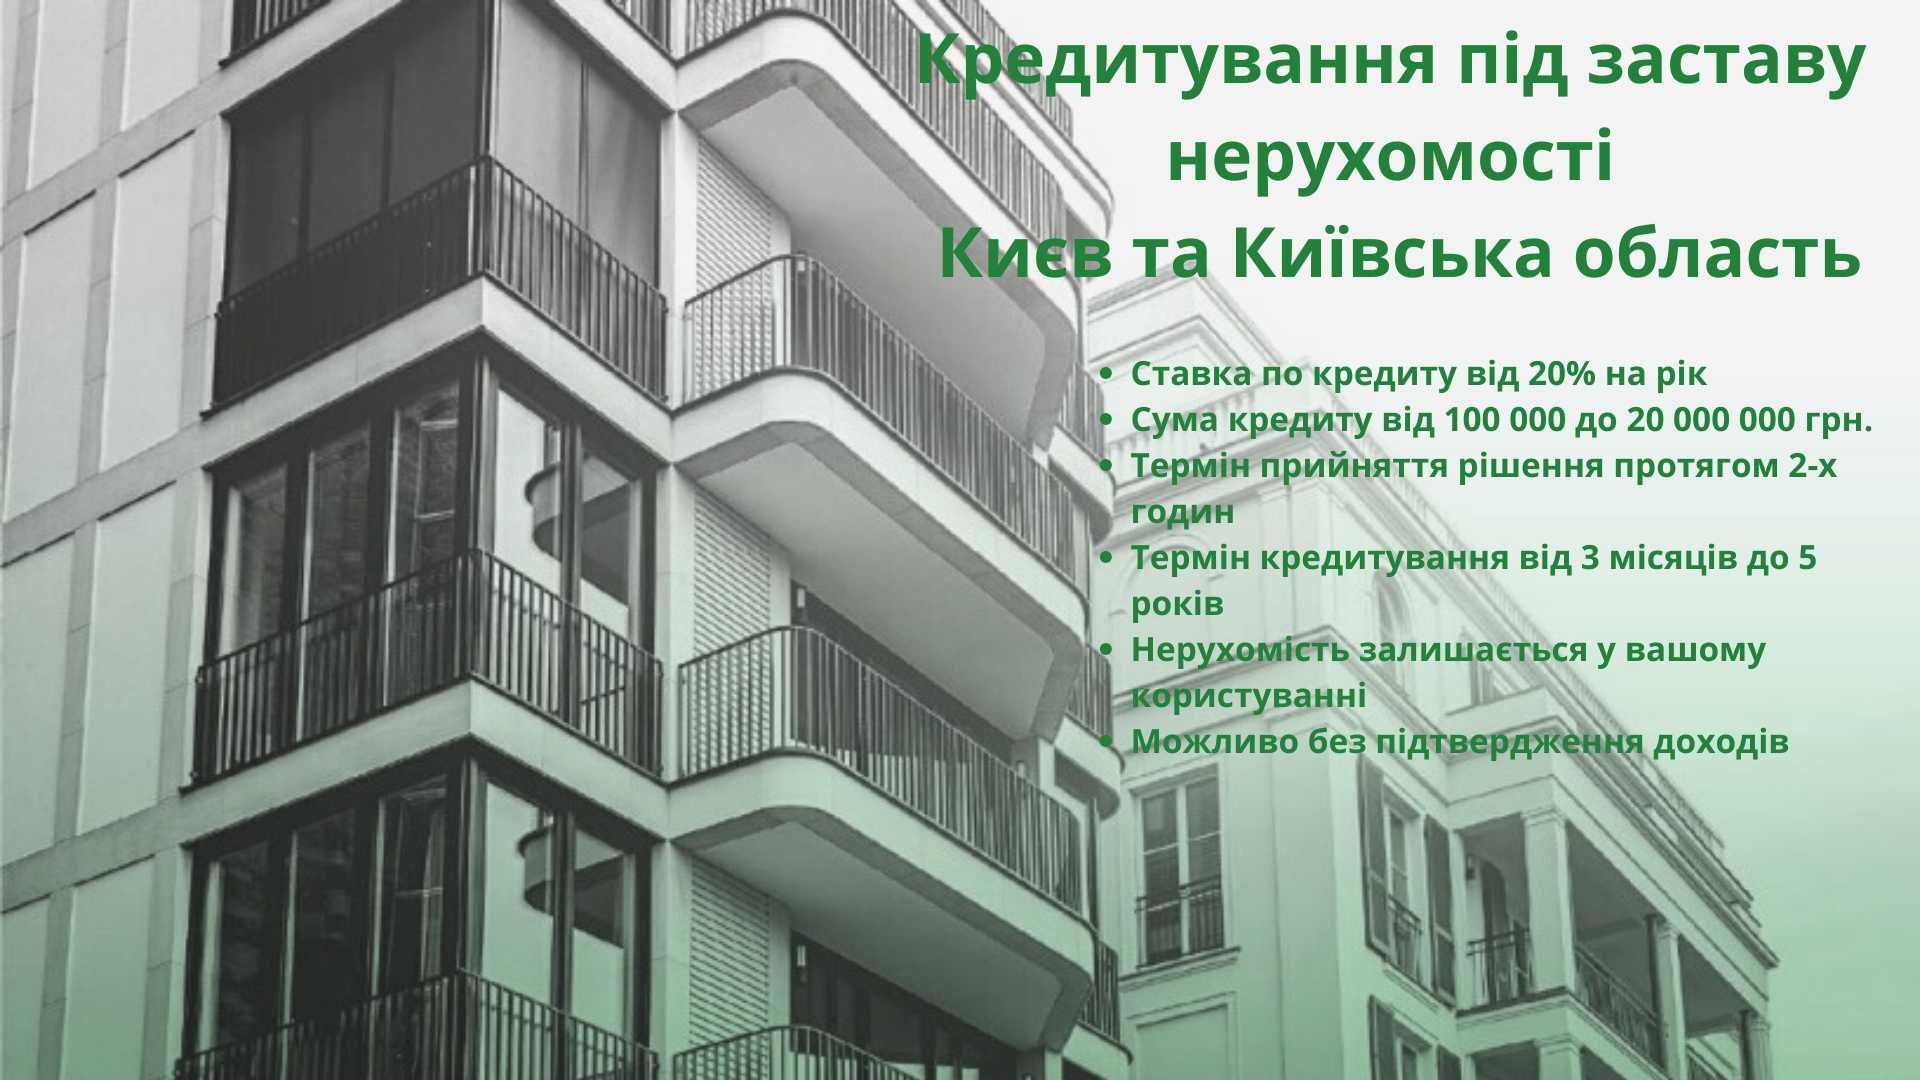 Кредит під заставу нерухомості Києв та Київська область